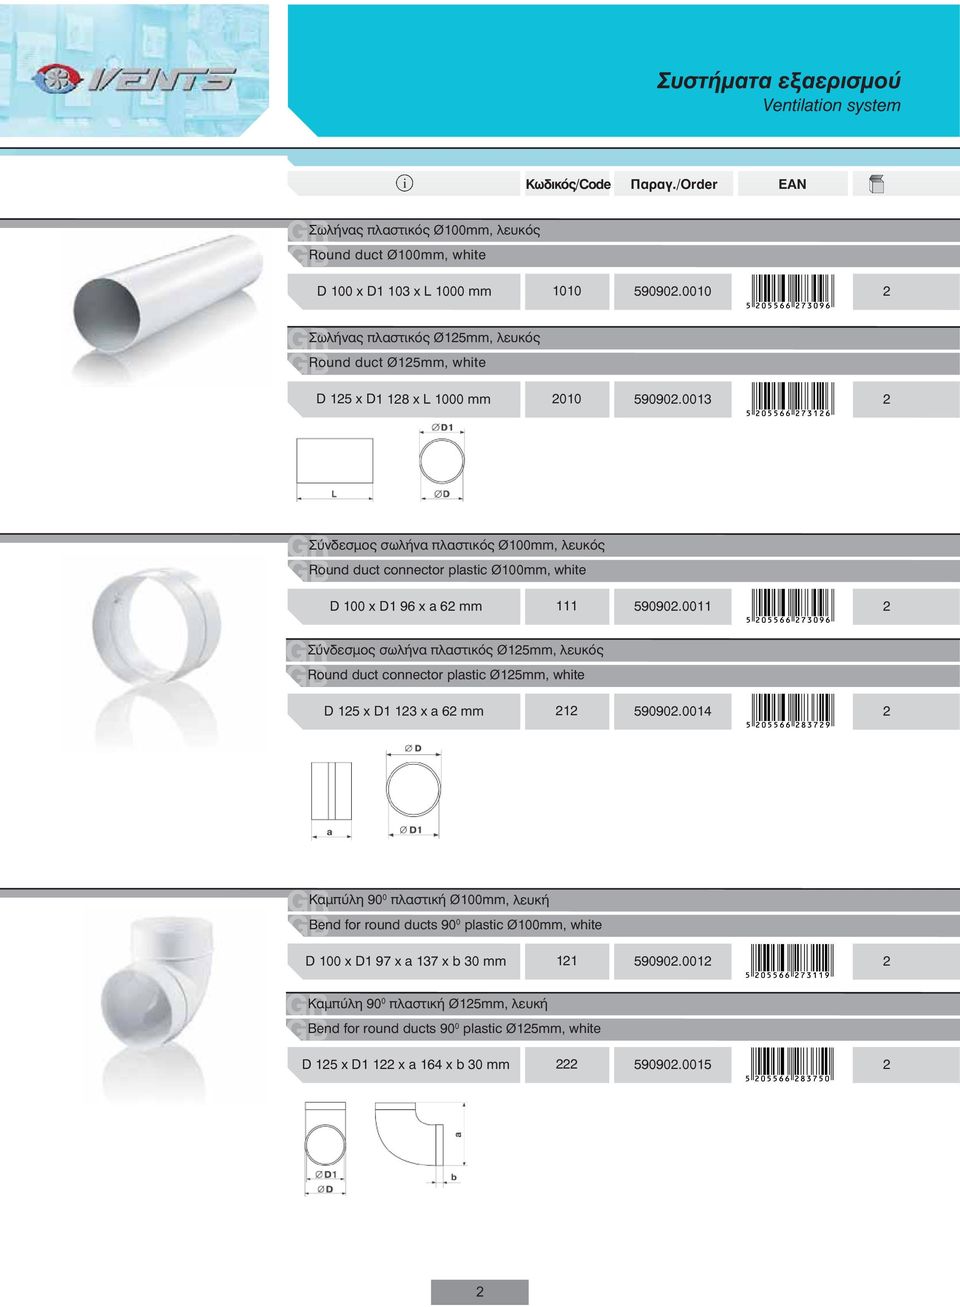 0013 2 Σύνδεσμος σωλήνα πλαστικός Ø100mm, λευκός Round duct connector plastc Ø100mm, whte D 100 x D1 96 x a 62 mm 111 590902.